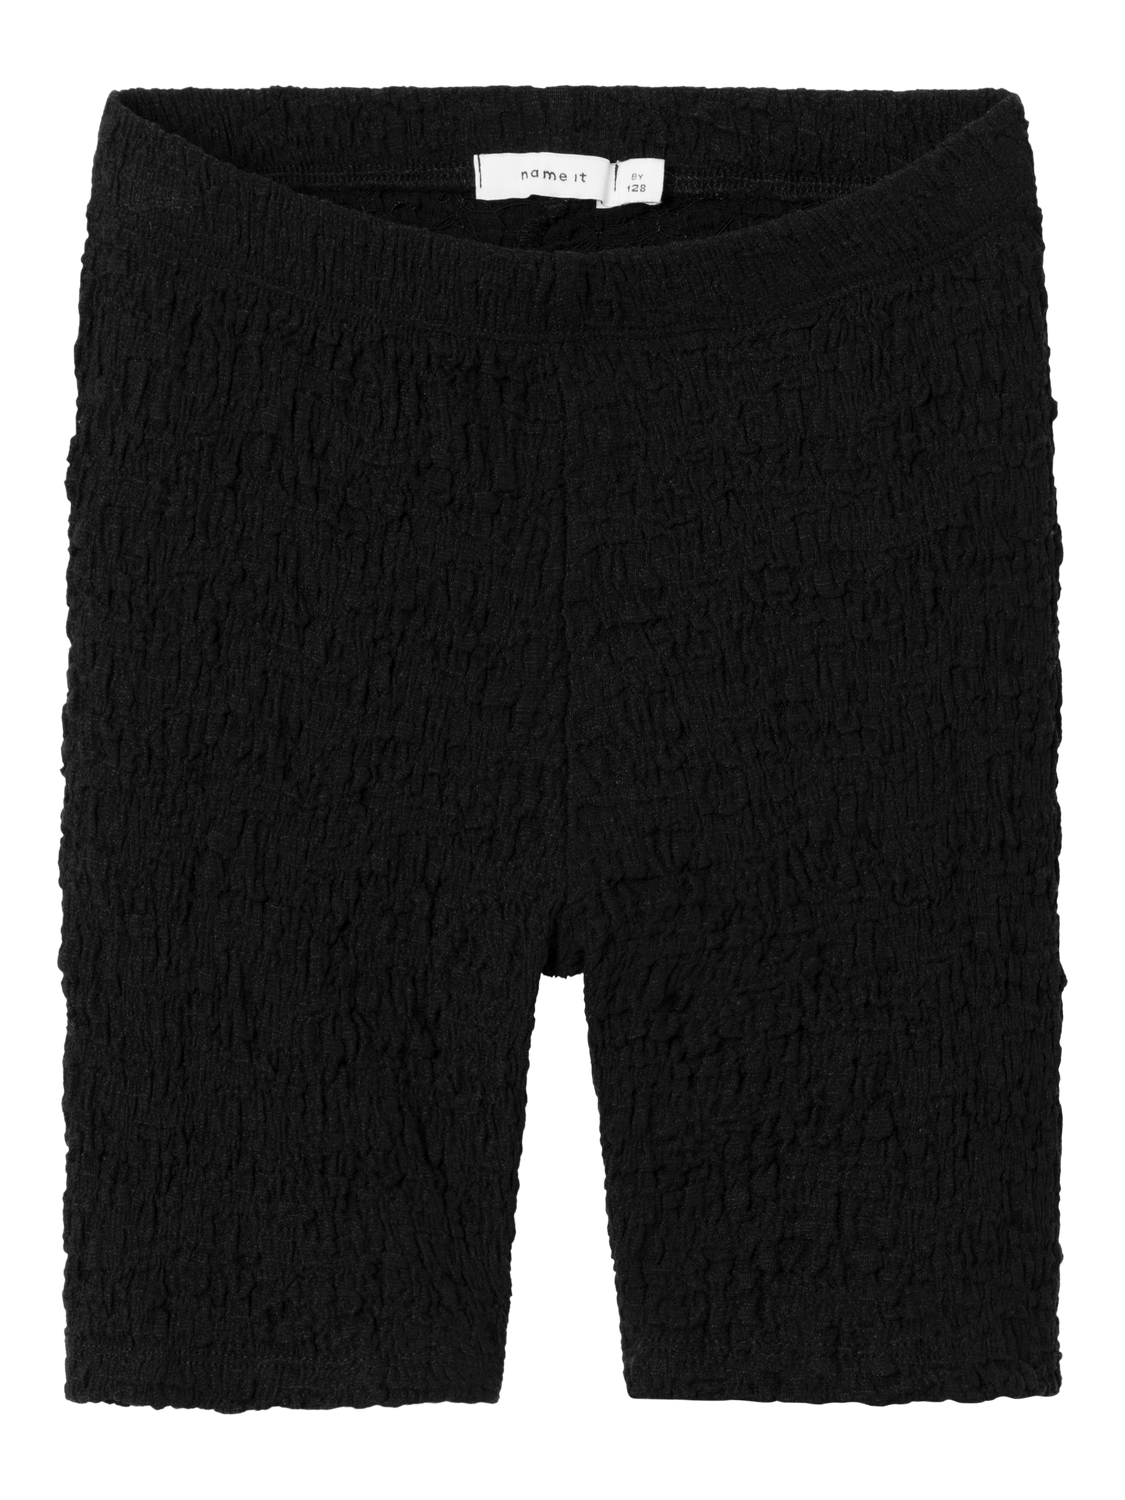 NKFHALISSE Shorts - Black